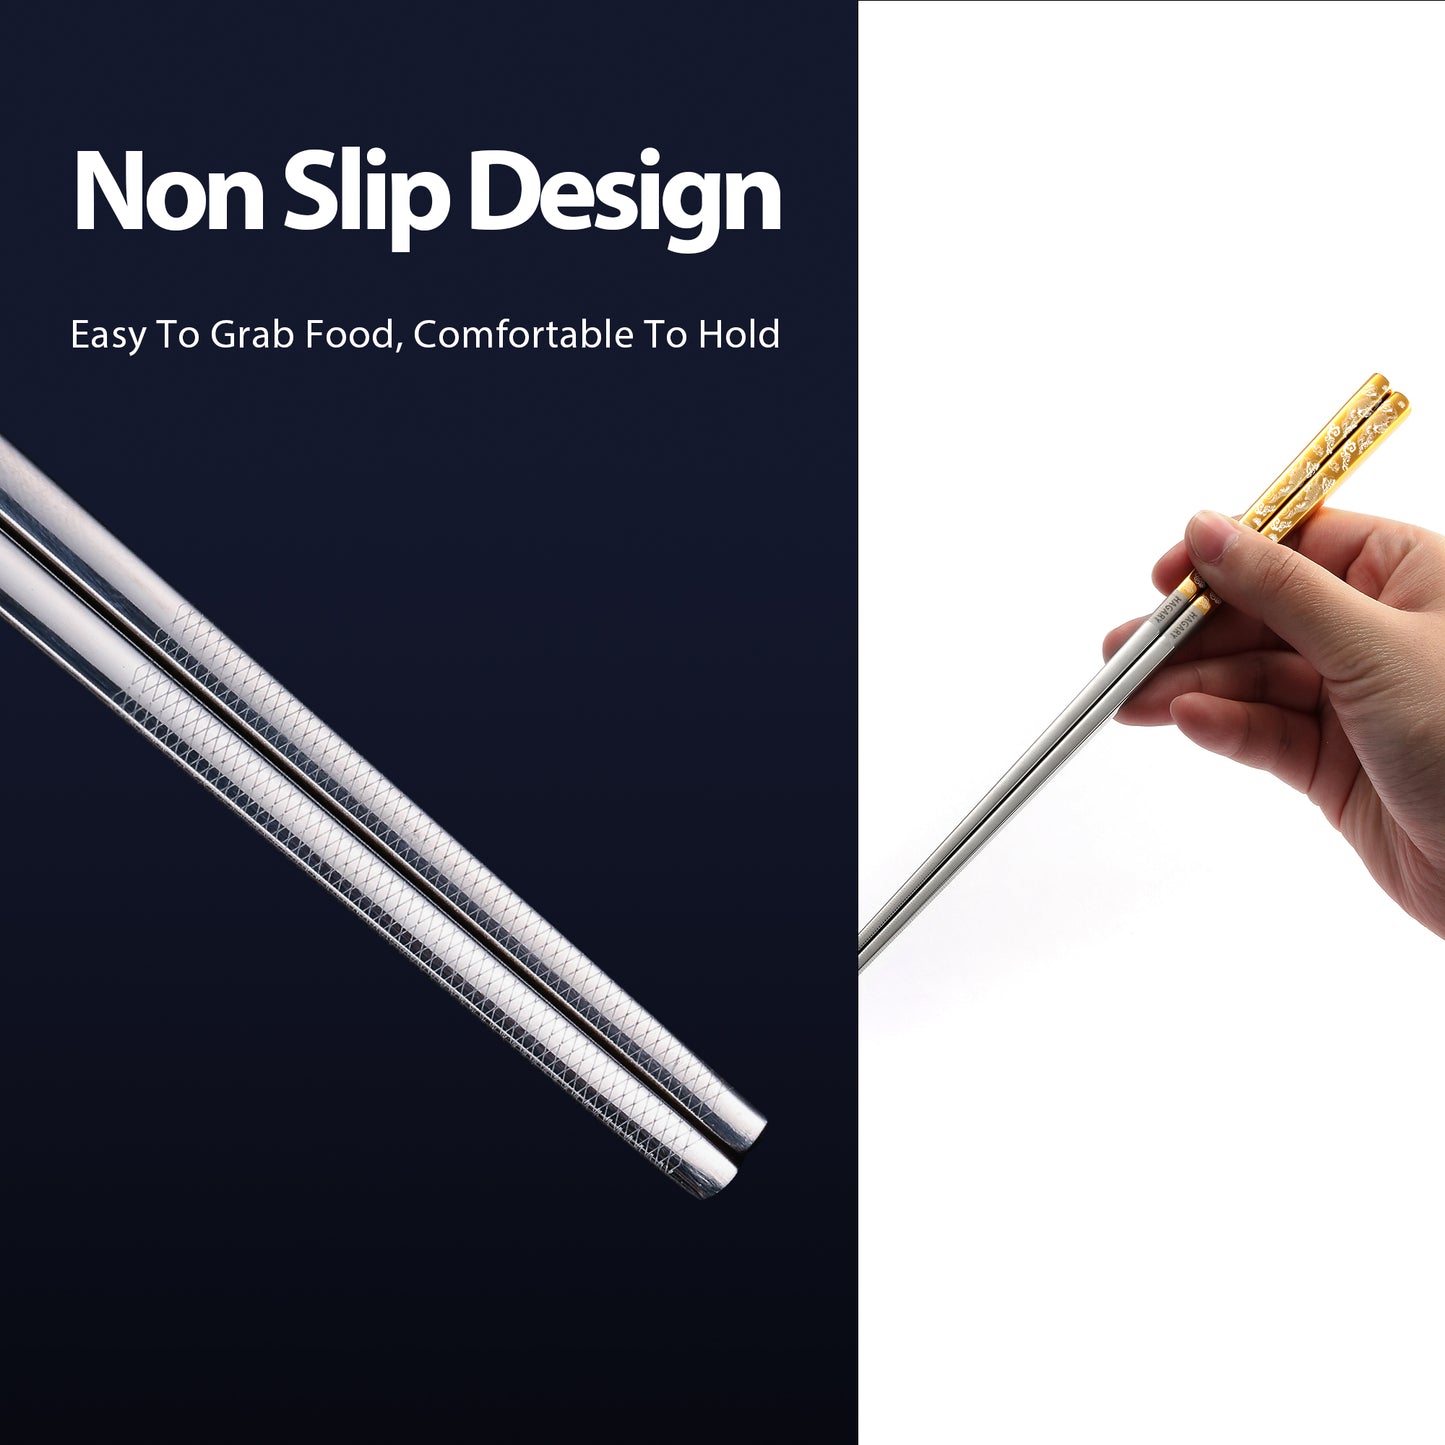 Carp Metal Reusable Chopsticks